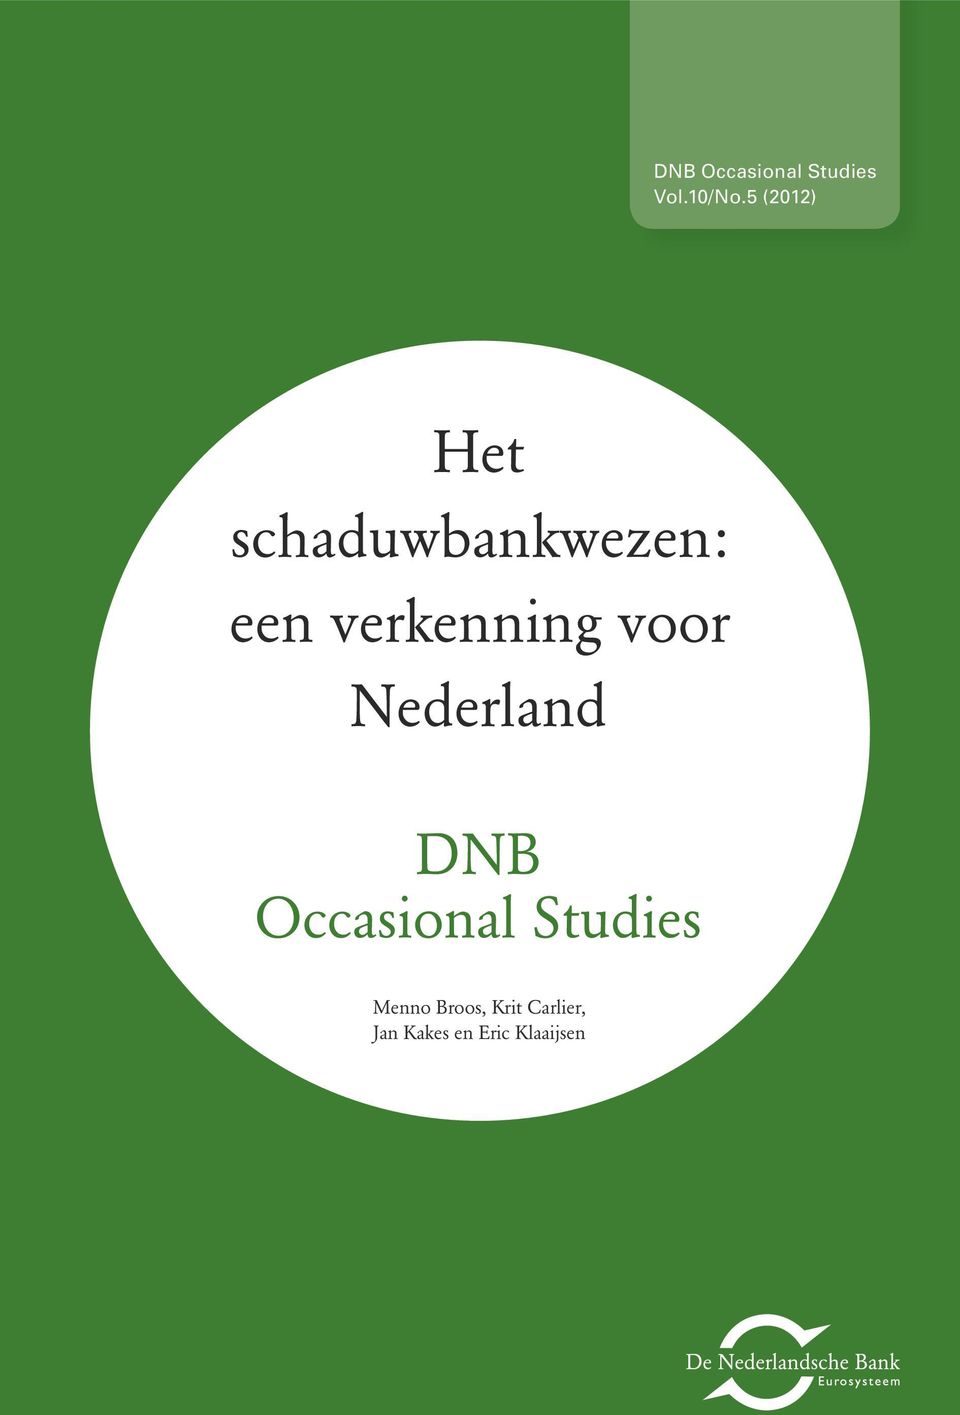 verkenning voor Nederland DNB Occasional